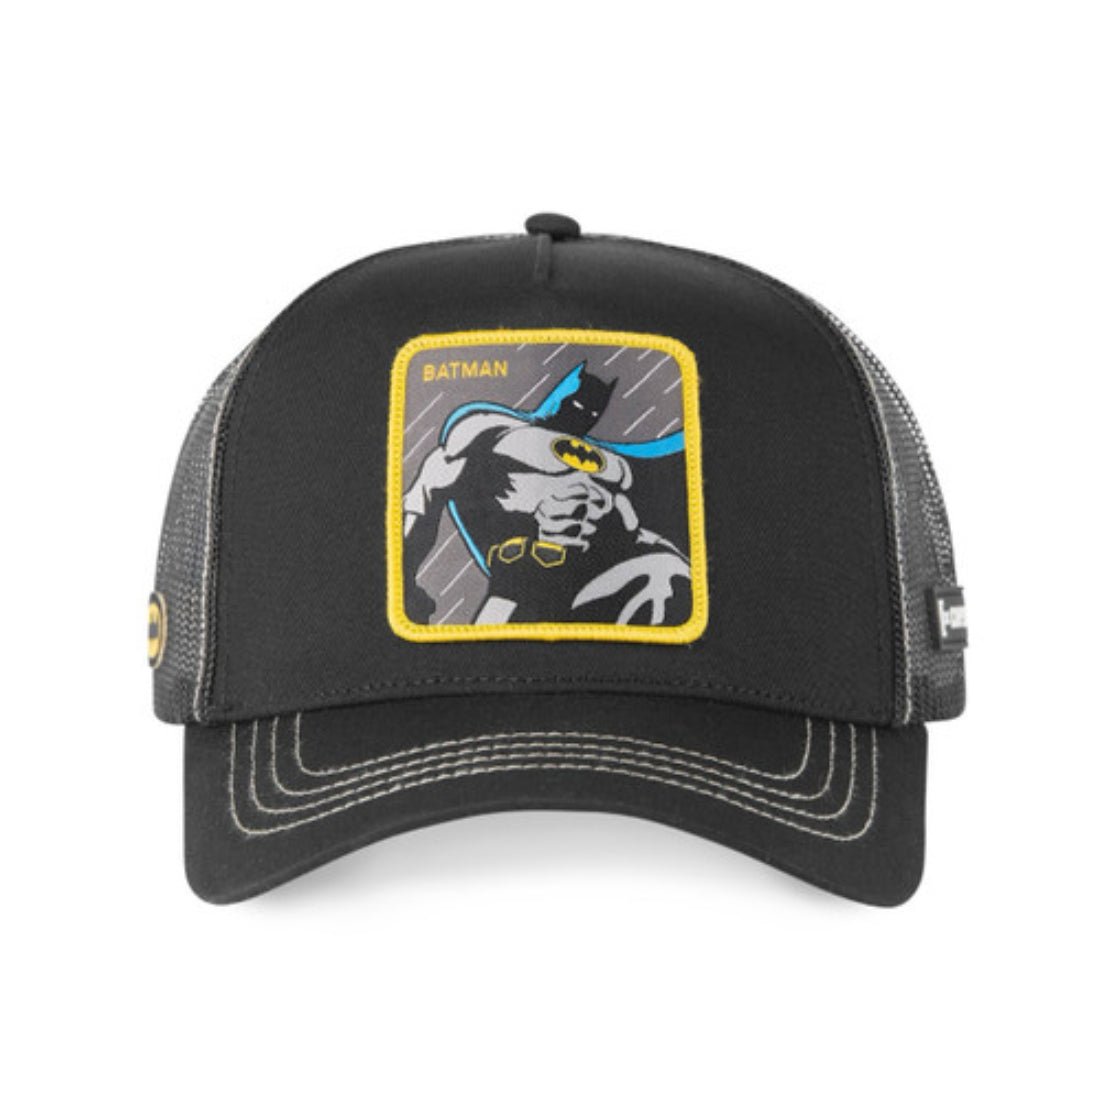 Queue Caps Batman Cap - Black - قبعة - Store 974 | ستور ٩٧٤